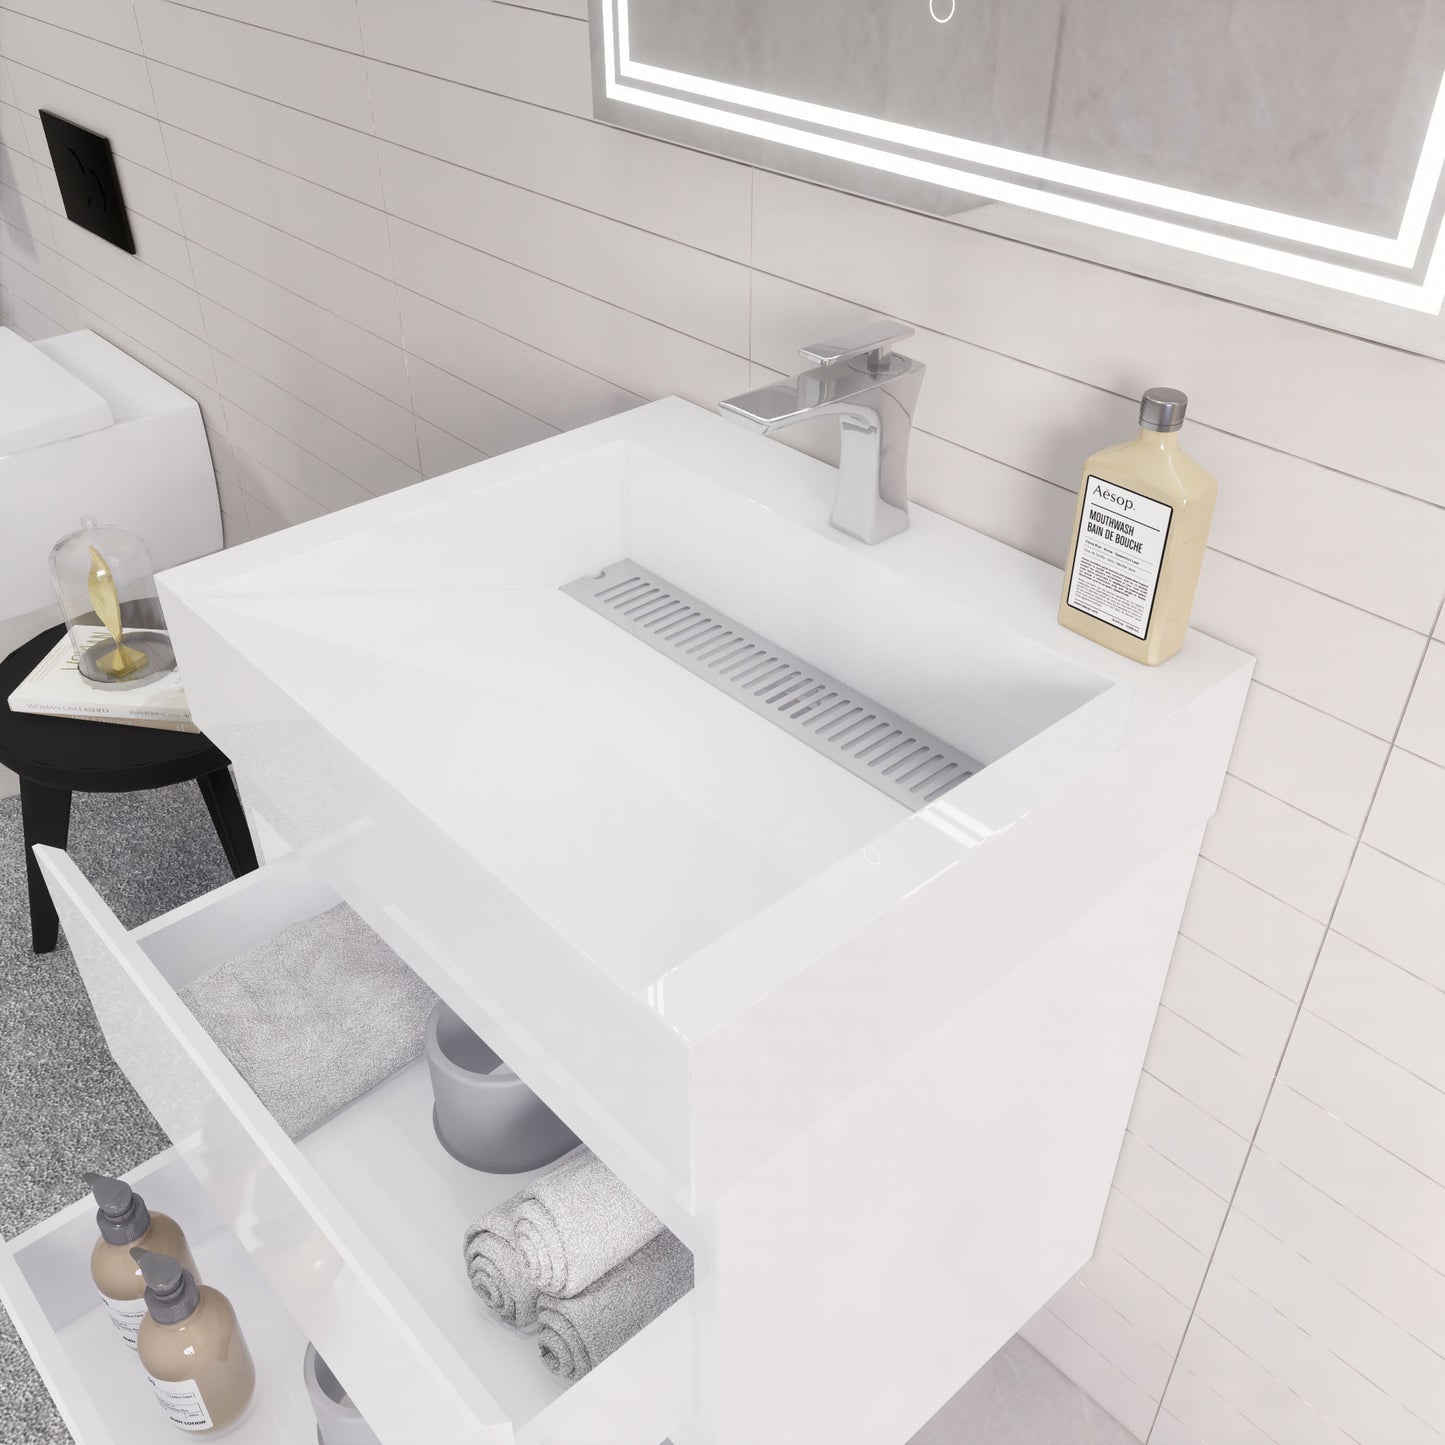 Monterey 24" Wall Mounted Bathroom Vanity with Reinforced Acrylic Sink